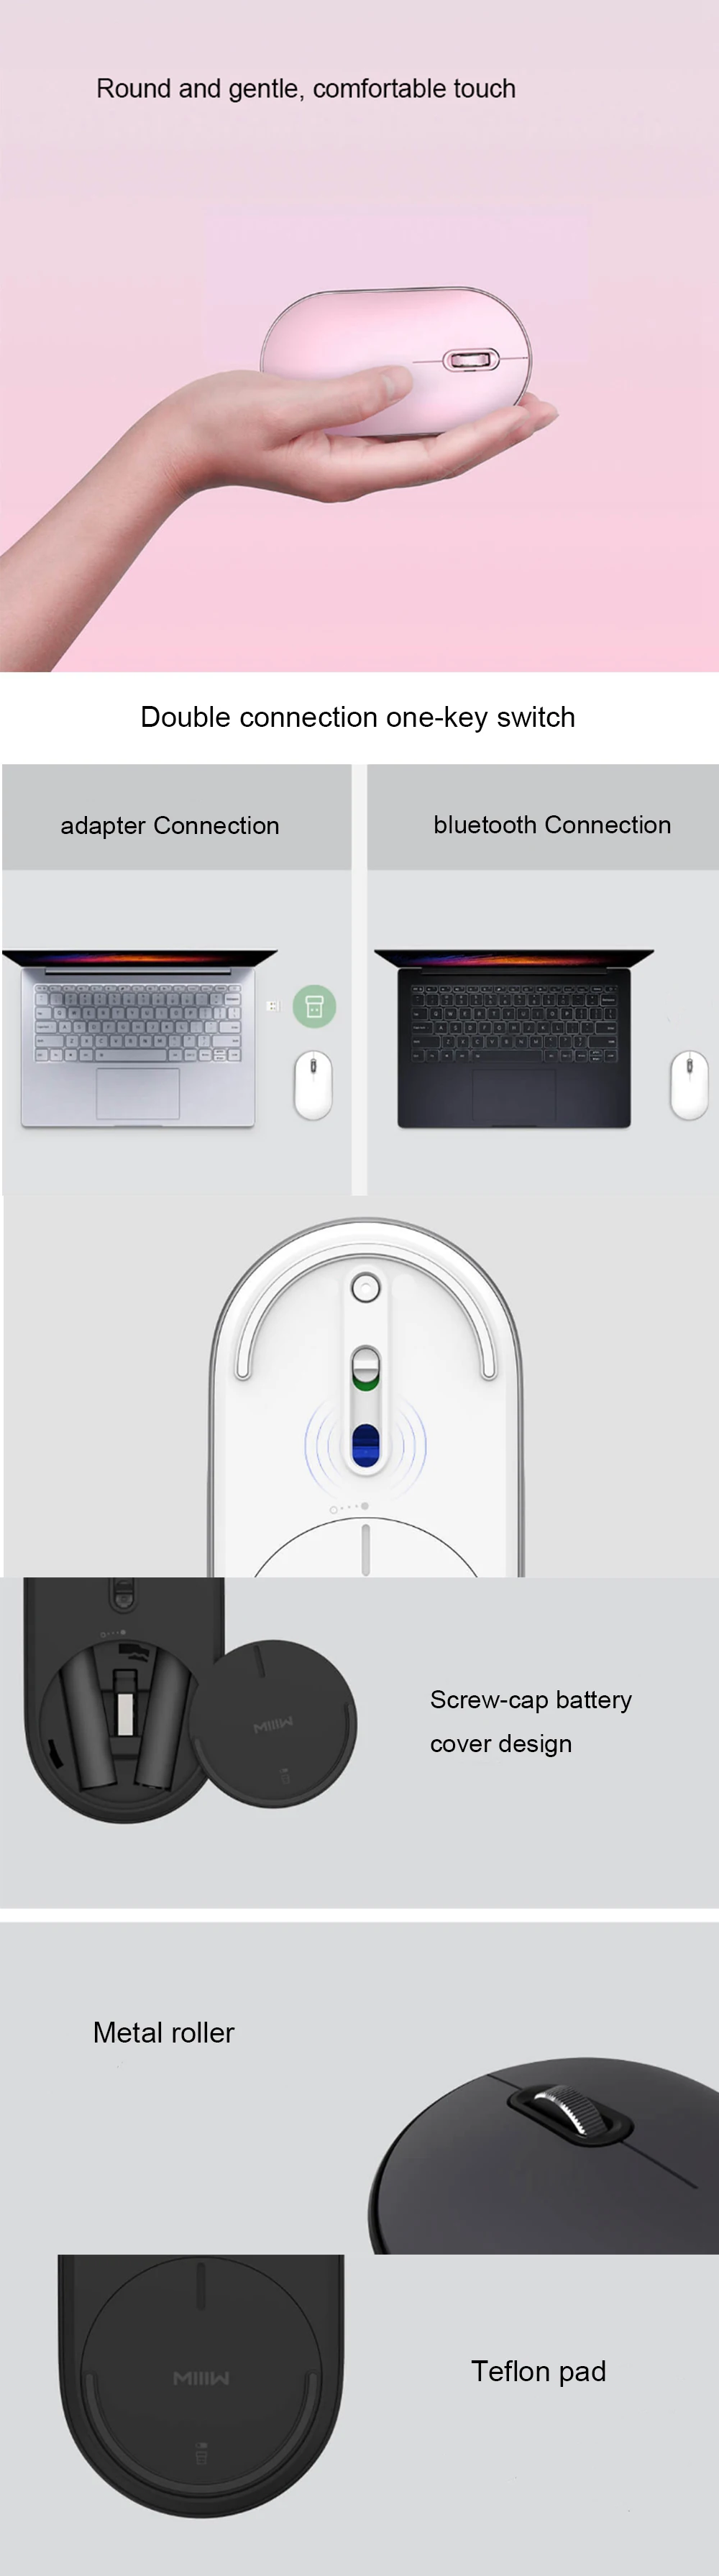 Xiaomi Mijia Miiiw Беспроводная компьютерная Двухрежимная мышь Air 2,4G приемник супер тонкая и бесшумная мышь для ПК ноутбука домашнего использования в офисе